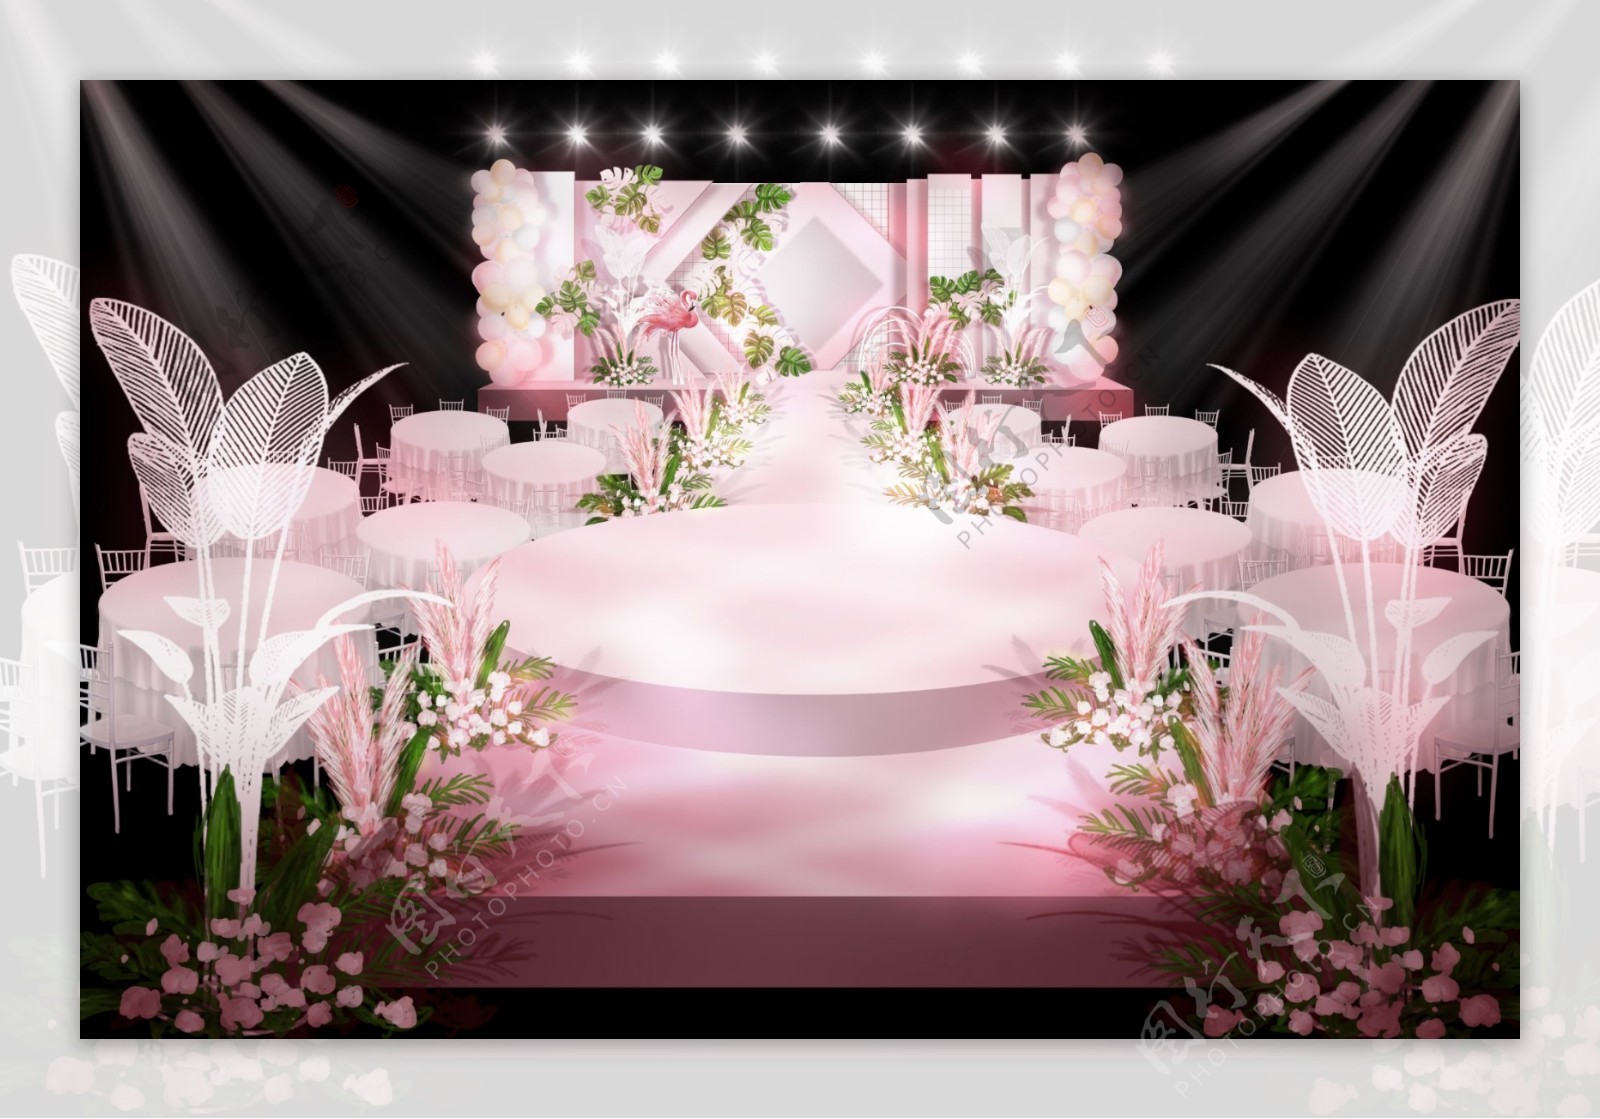 网红粉色火烈鸟婚礼背景图片